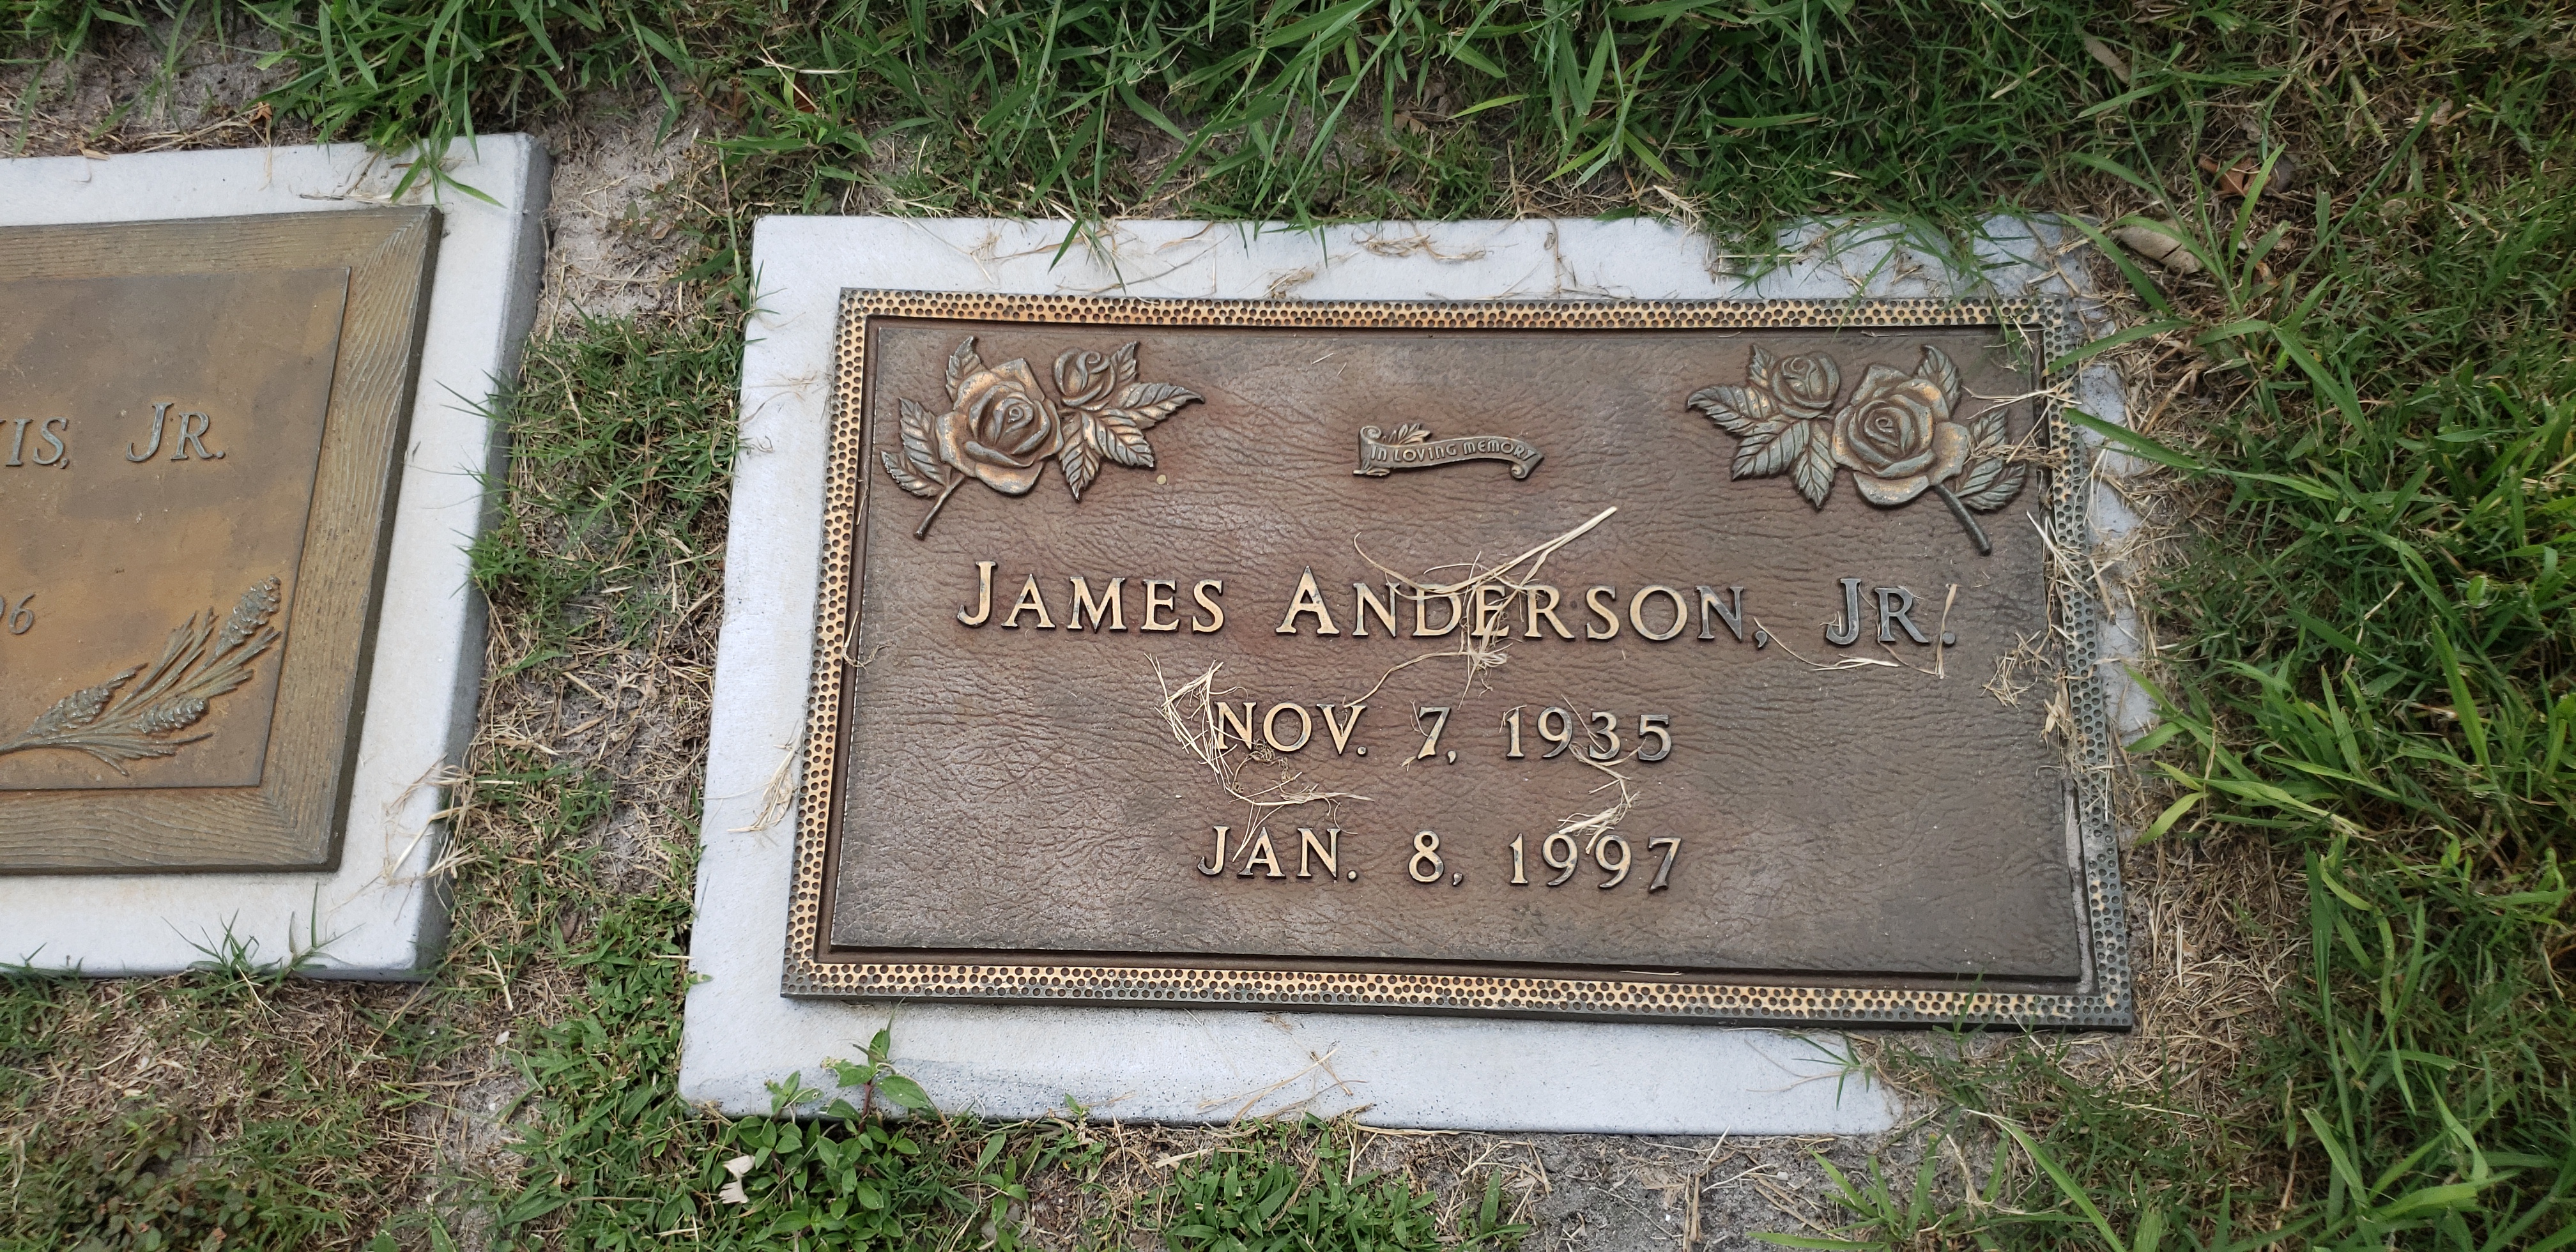 James Anderson, Jr